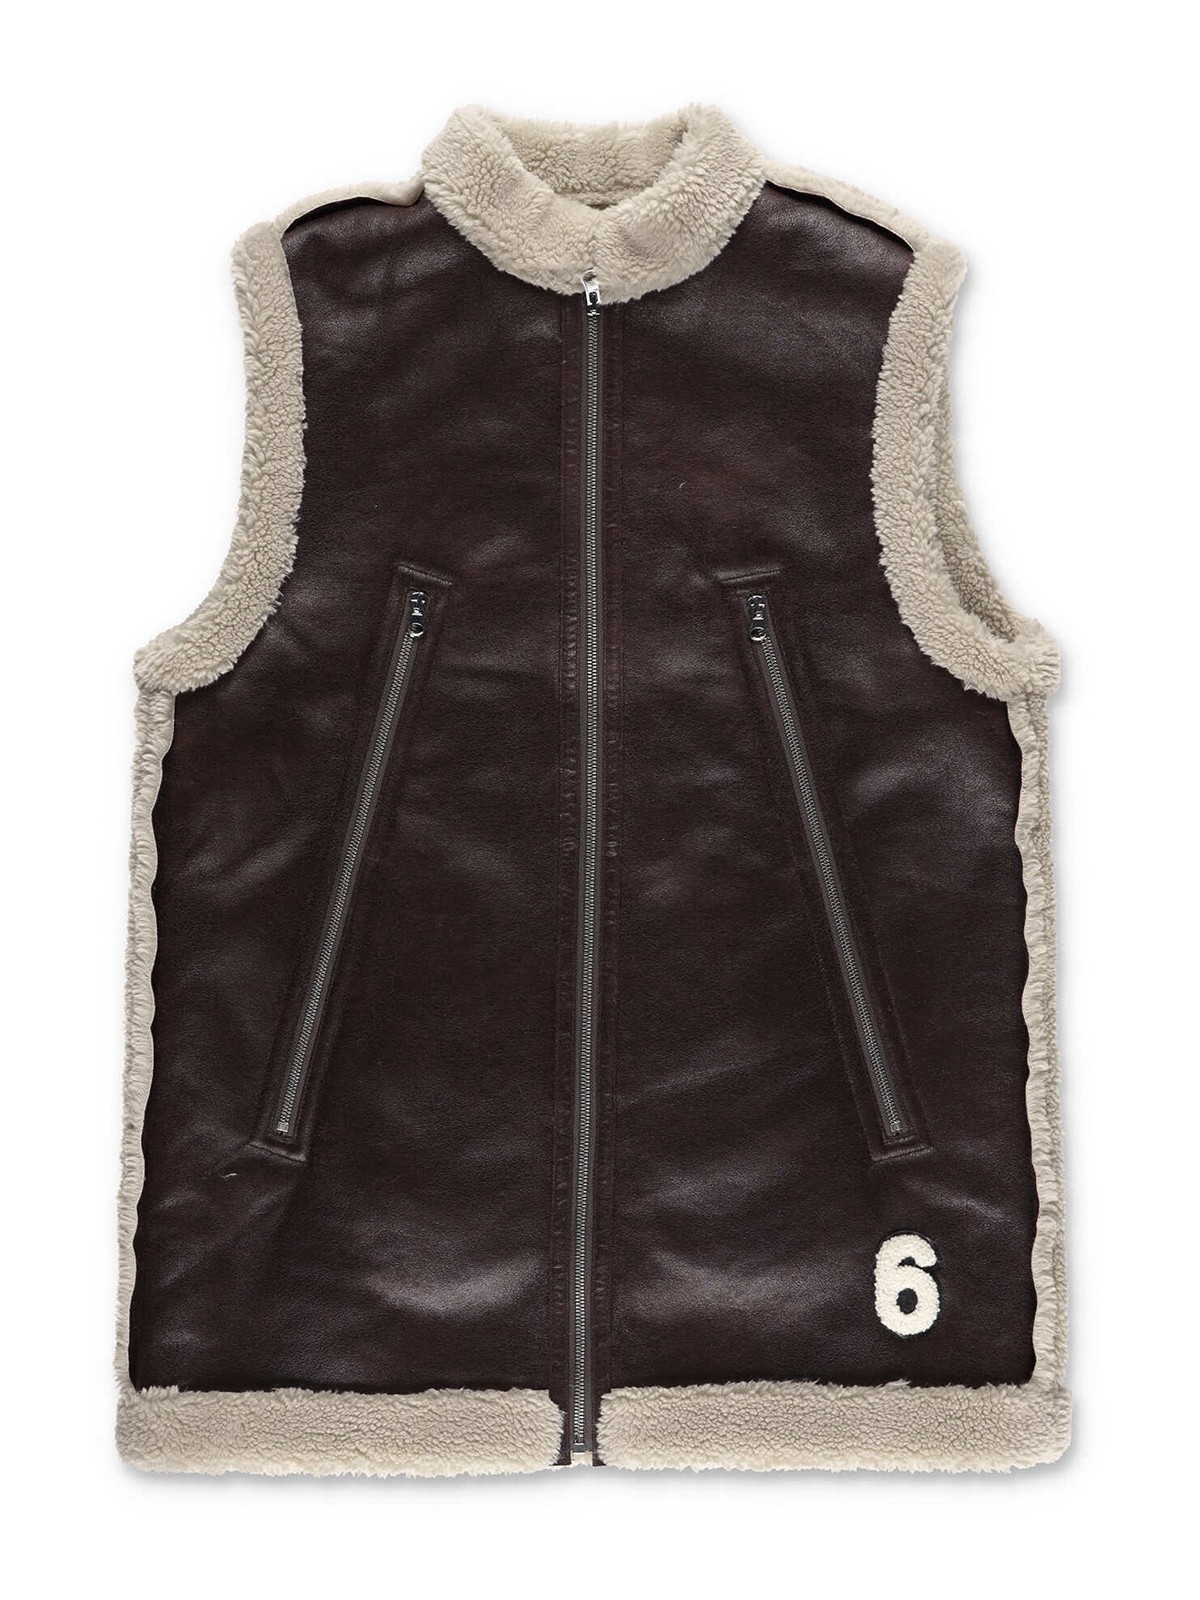 MM6 maison margiela faux leather vest身幅50